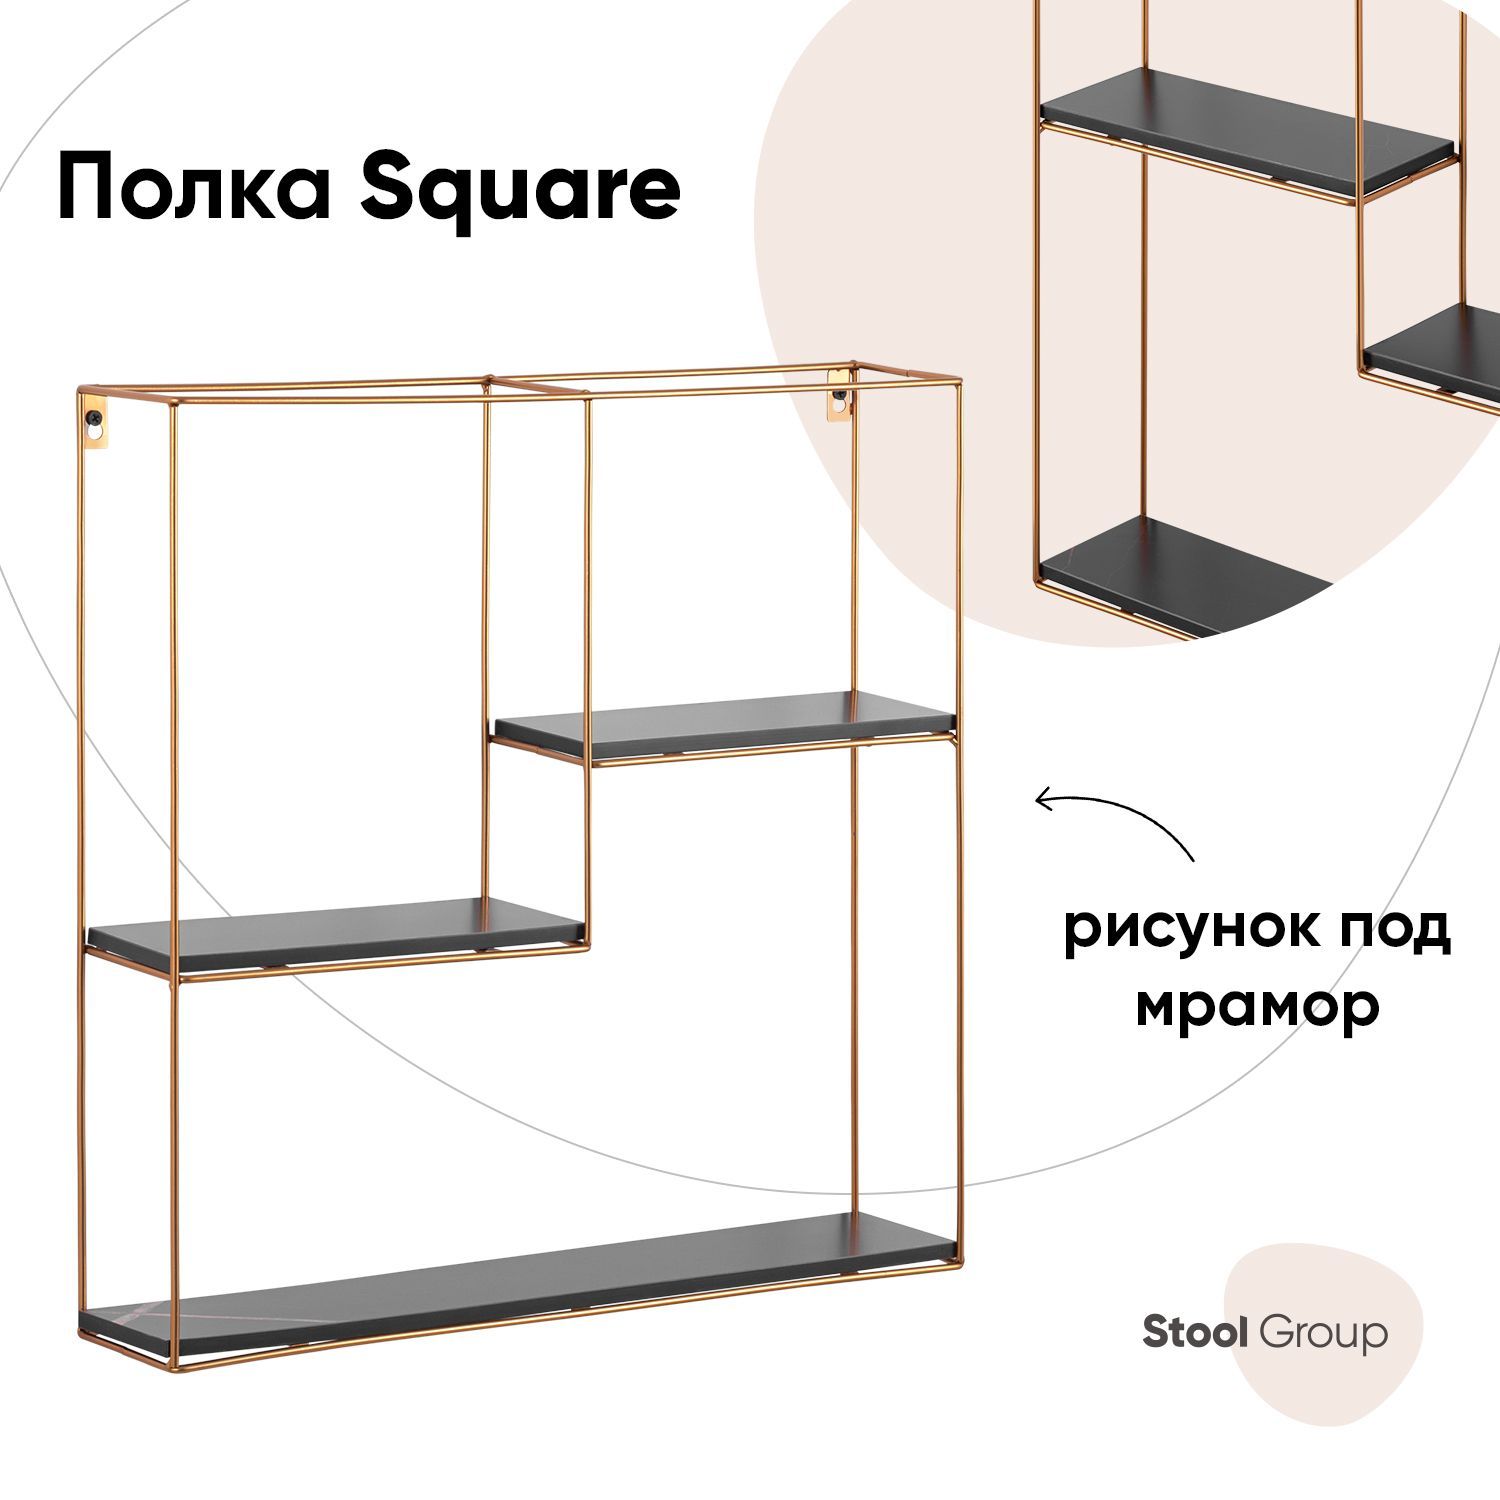 Полка Square Stool Group золотая, черный мрамор - купить в Москве, цены на Мегамаркет | 600012649900